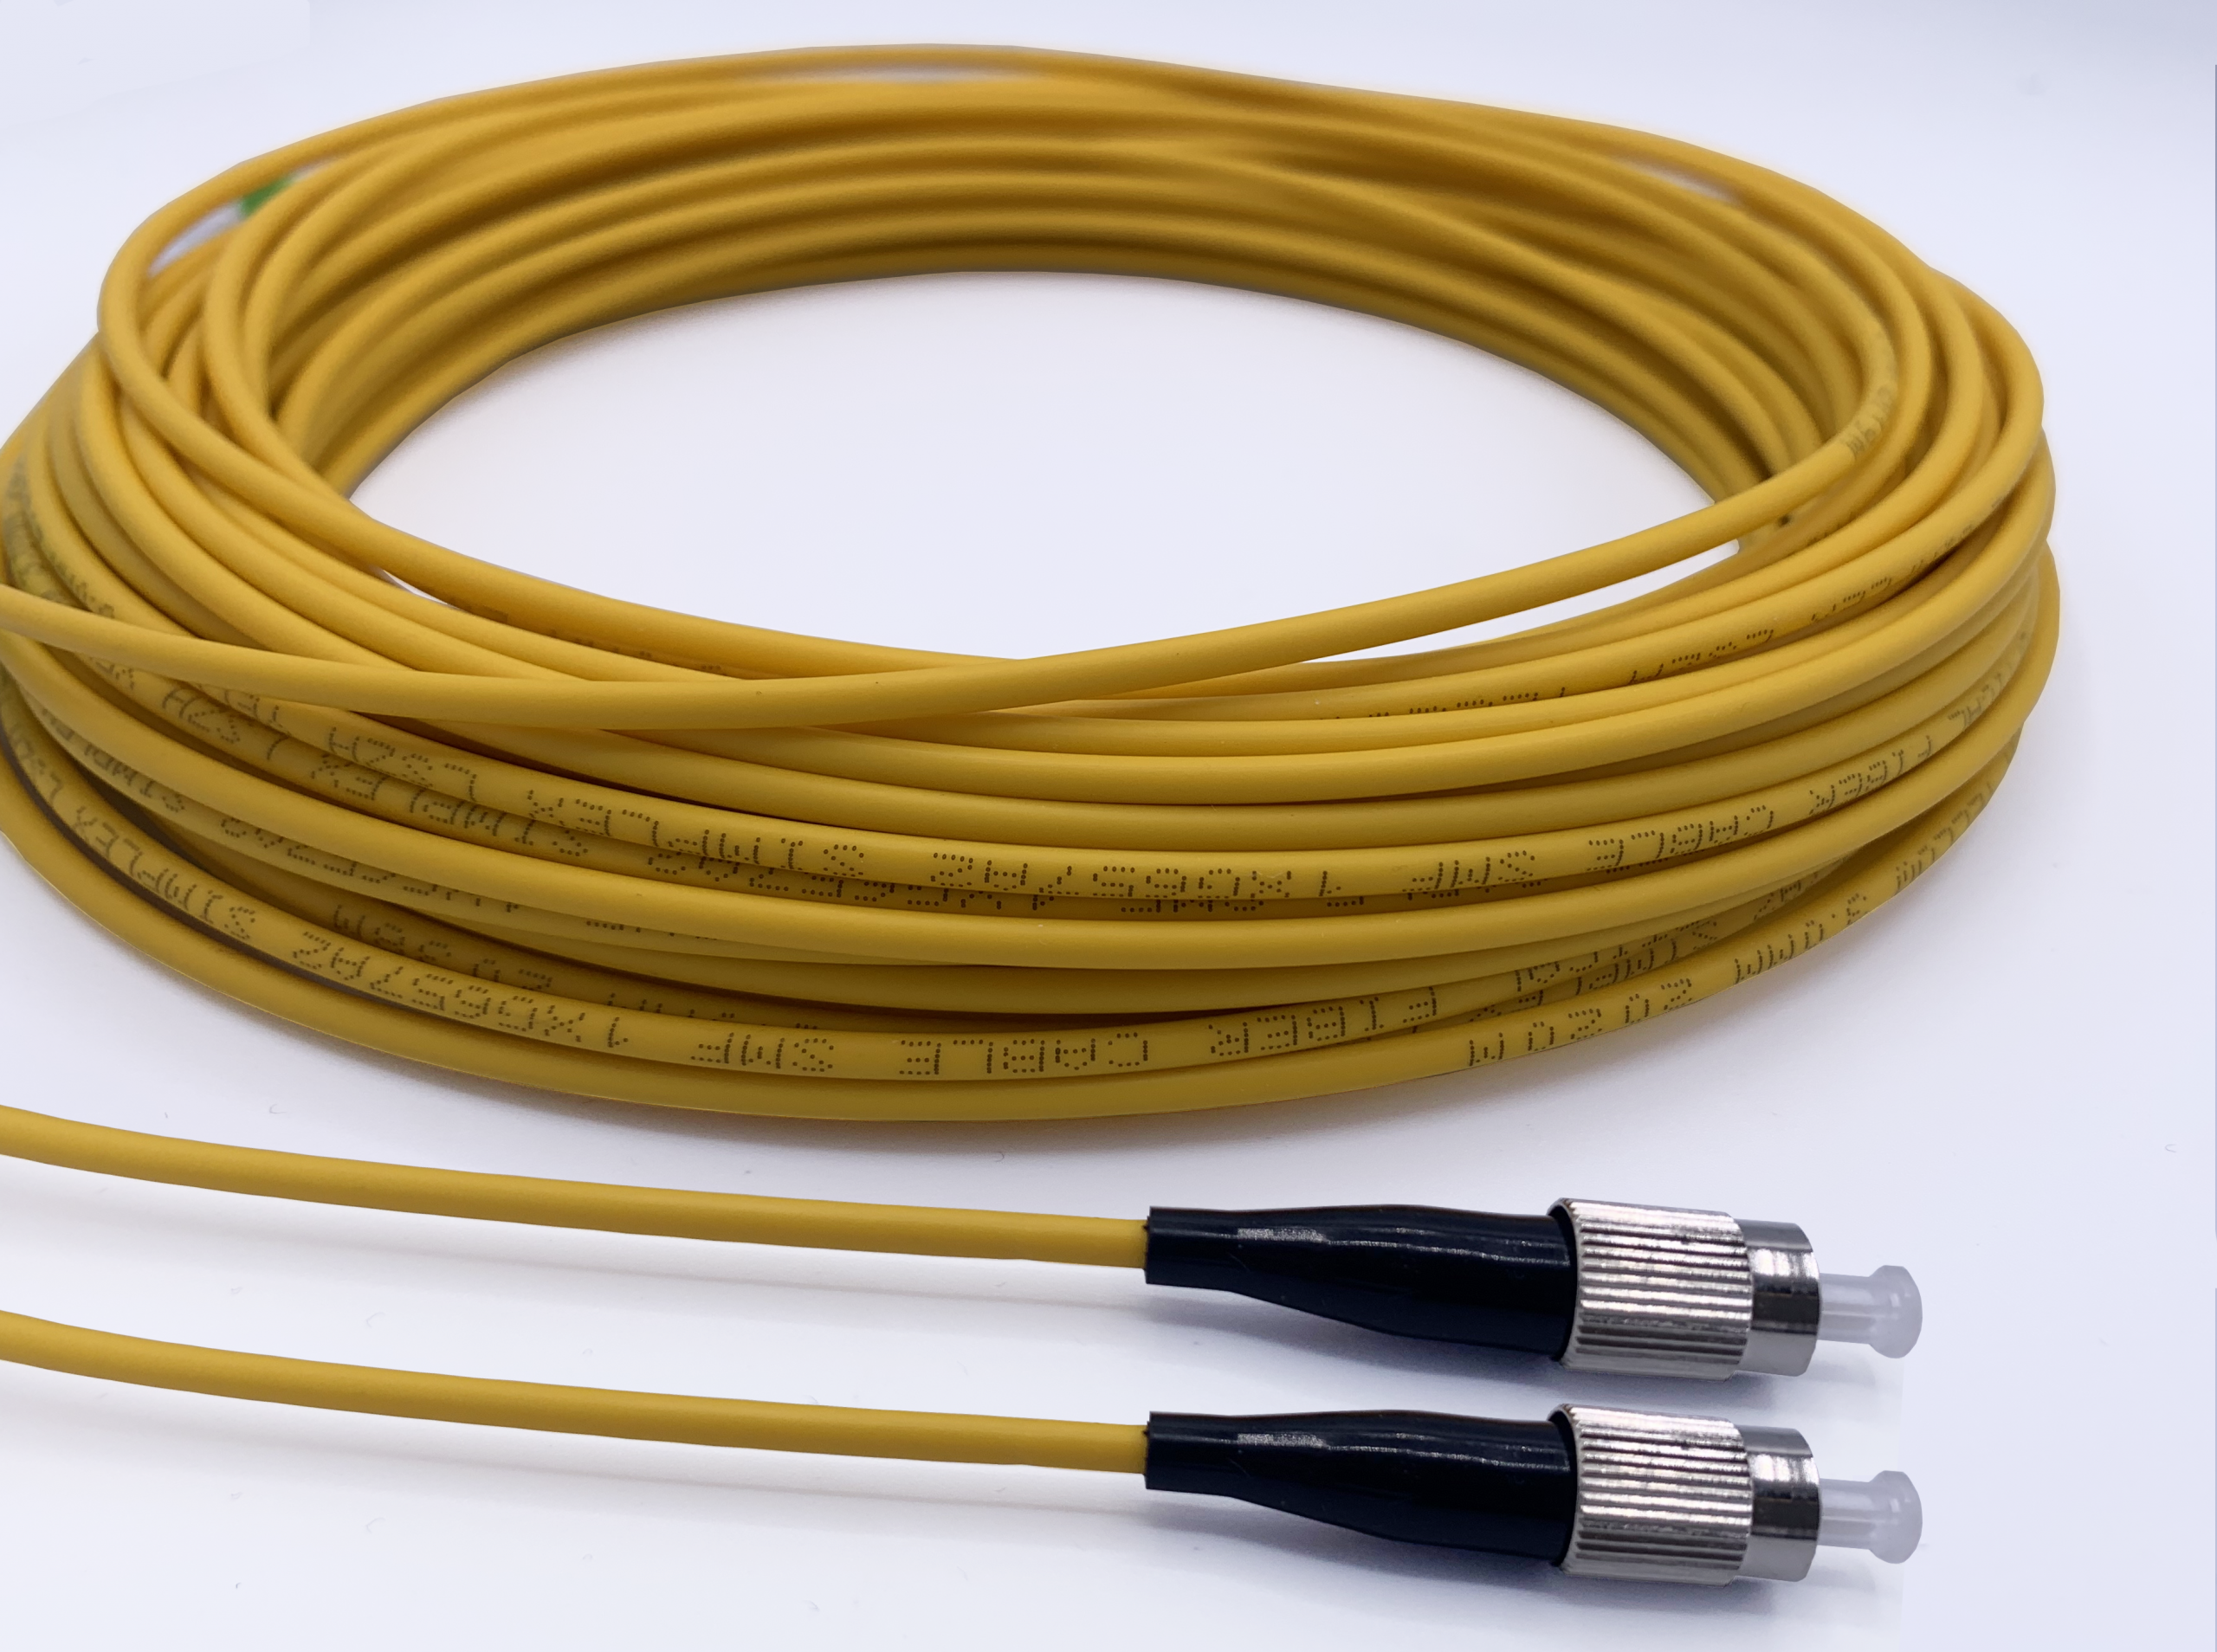 Real Cable Crystal 2, câble optique de 0m75 à 1m50 Câbles Optique